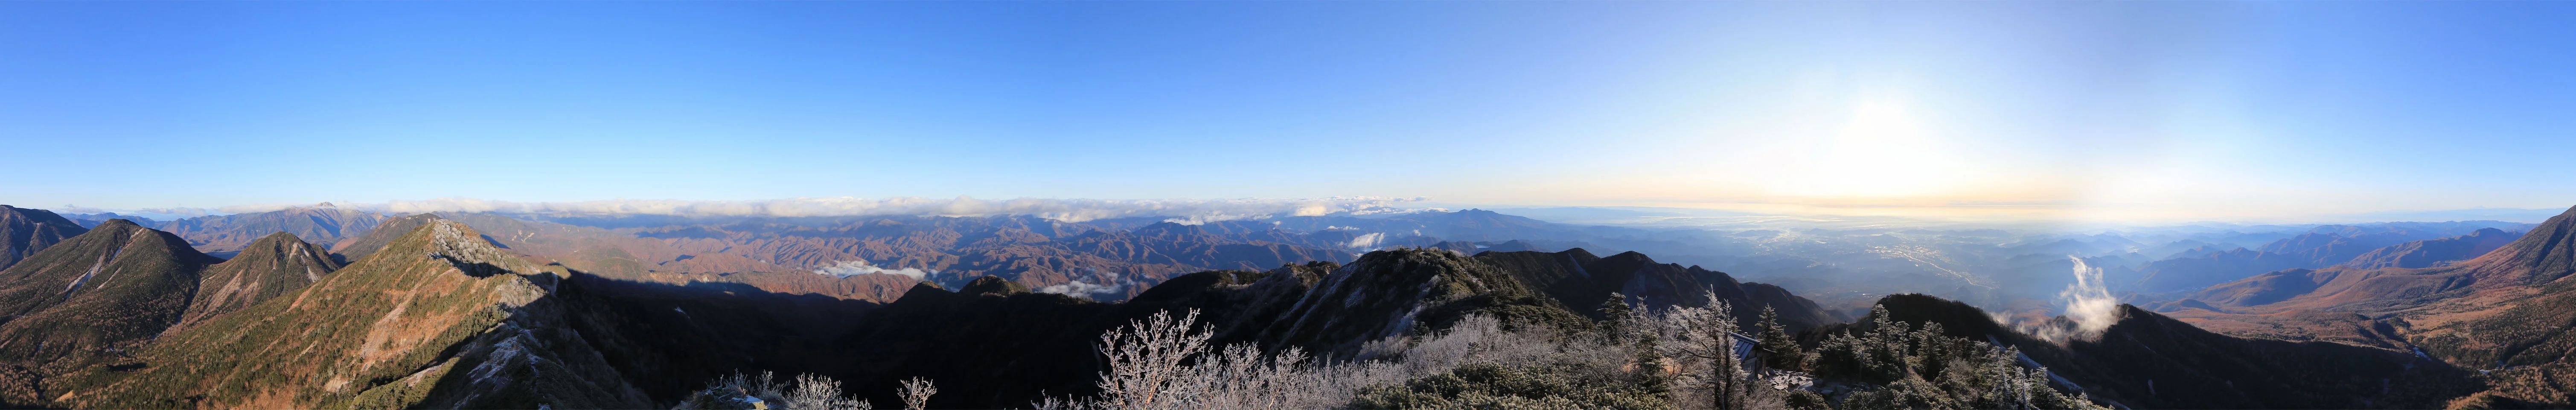 女峰山からのパノラマ写真